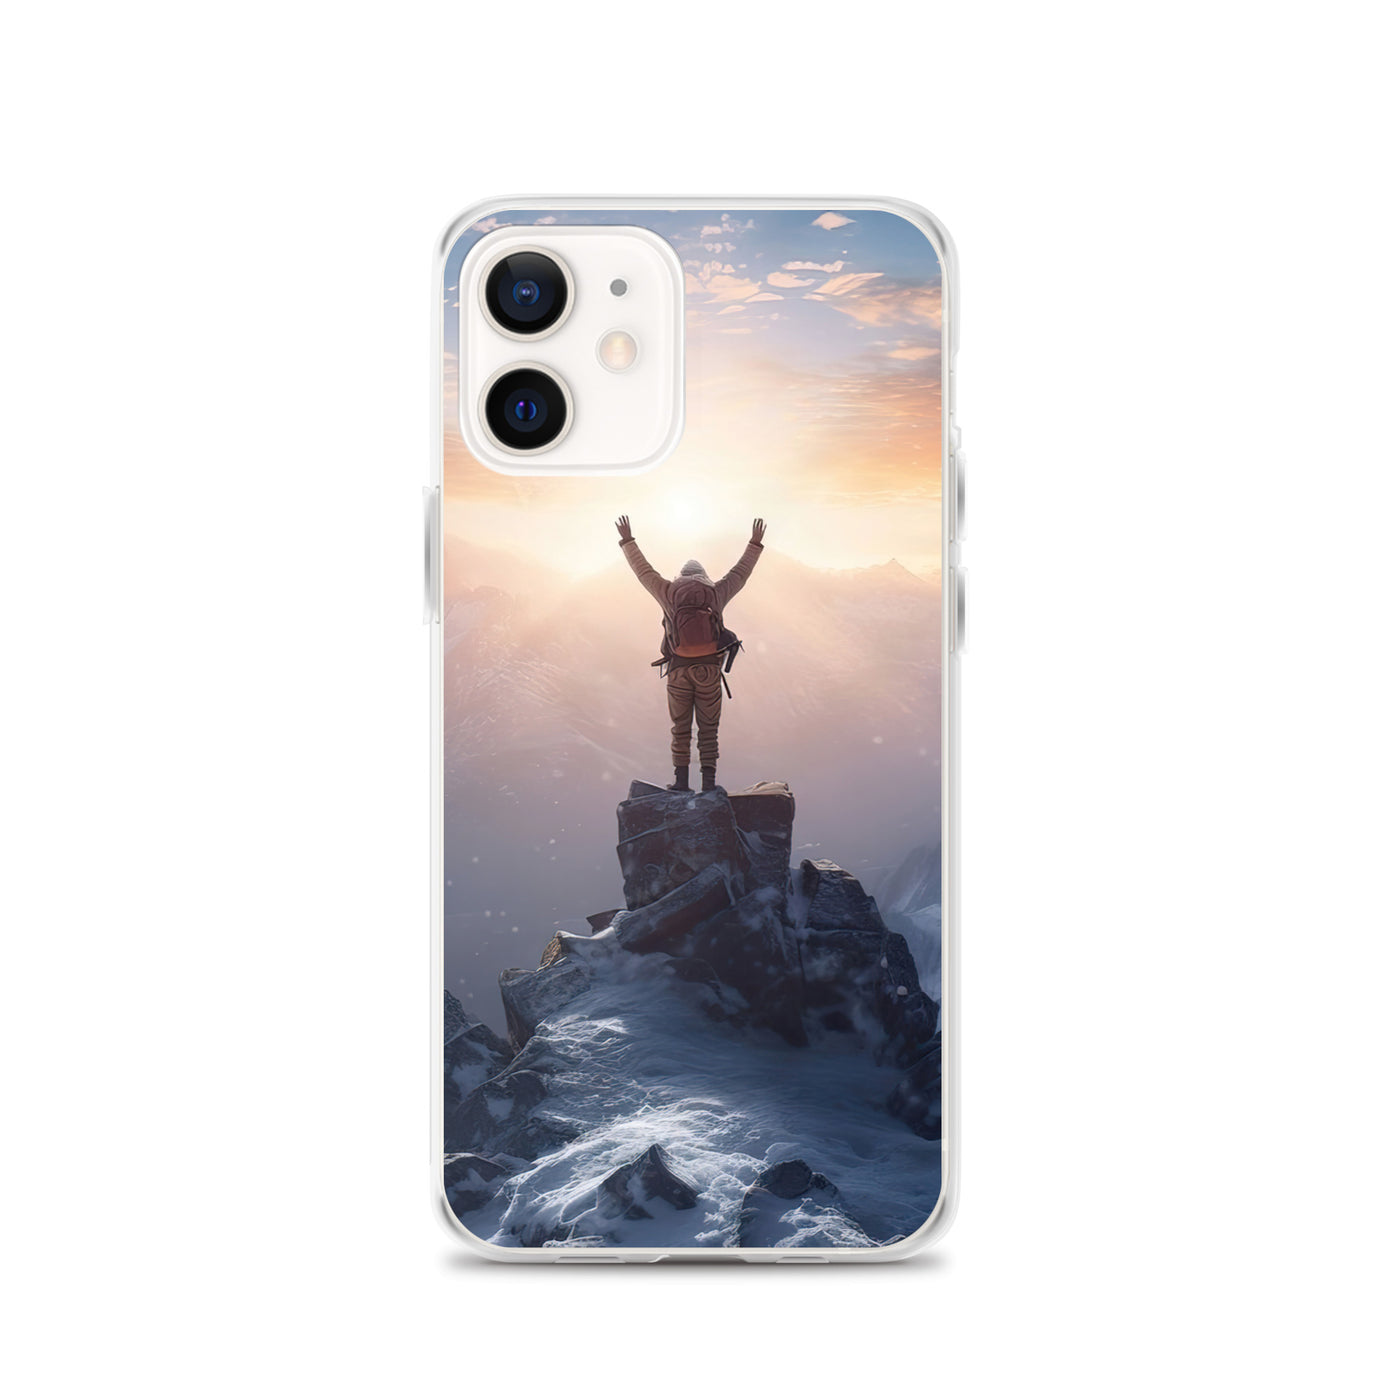 Mann auf der Spitze eines Berges - Landschaftsmalerei - iPhone Schutzhülle (durchsichtig) berge xxx iPhone 12